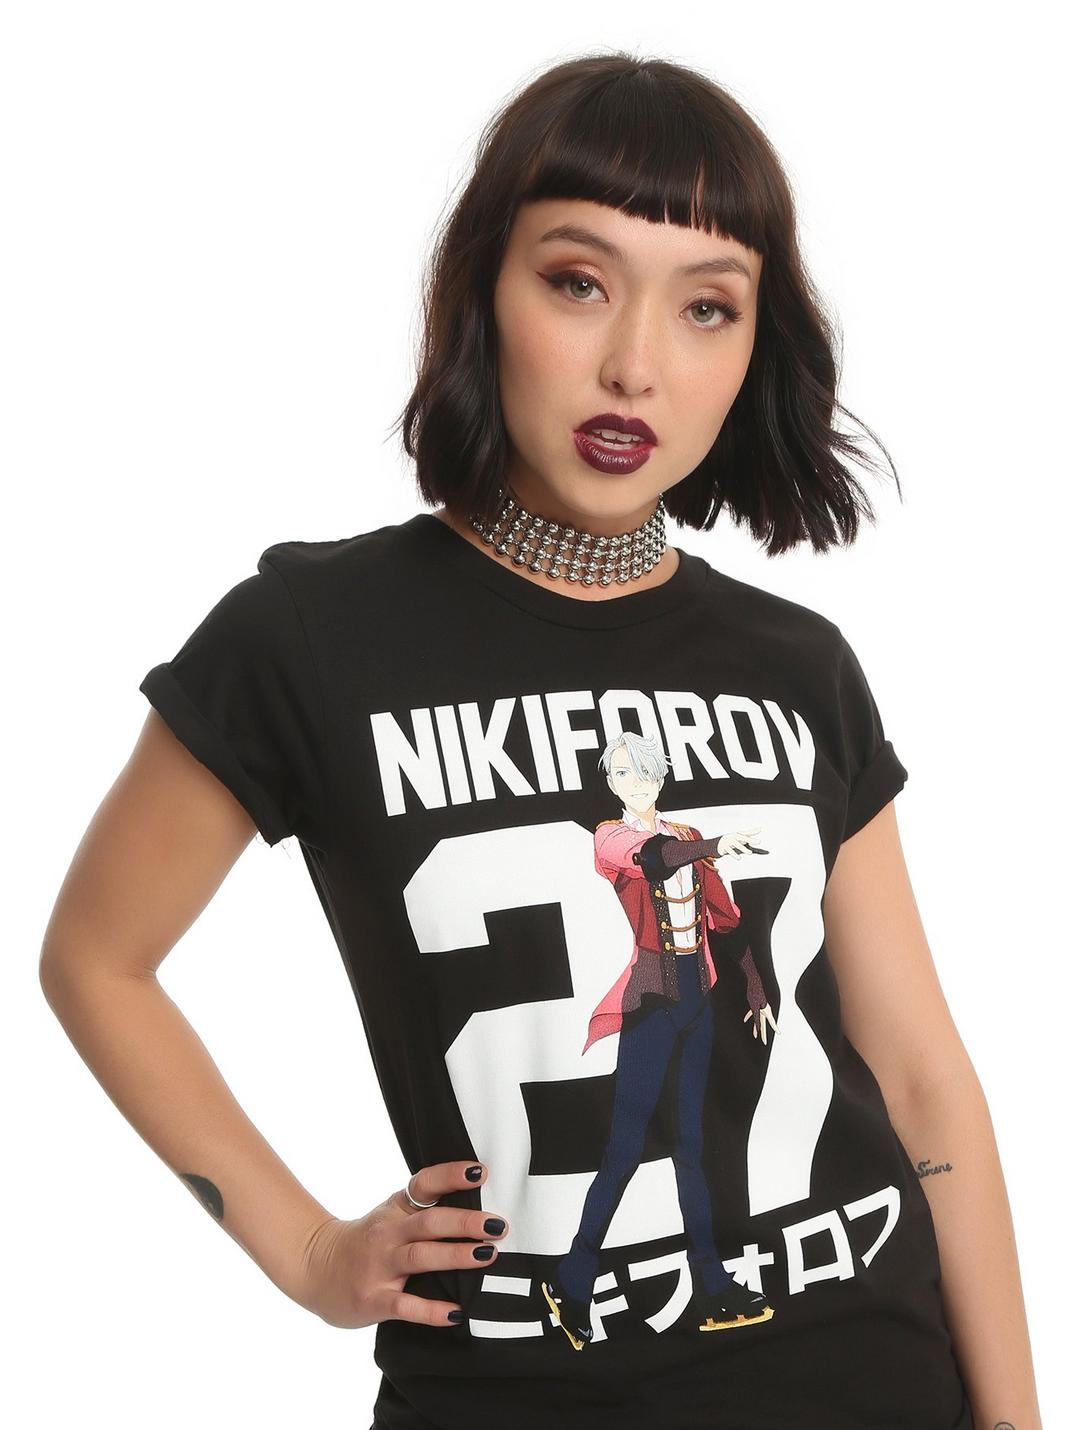 Yuri!!! On Ice Nikiforov 27 Victor Girls T-Shirt, BLACK, hi-res